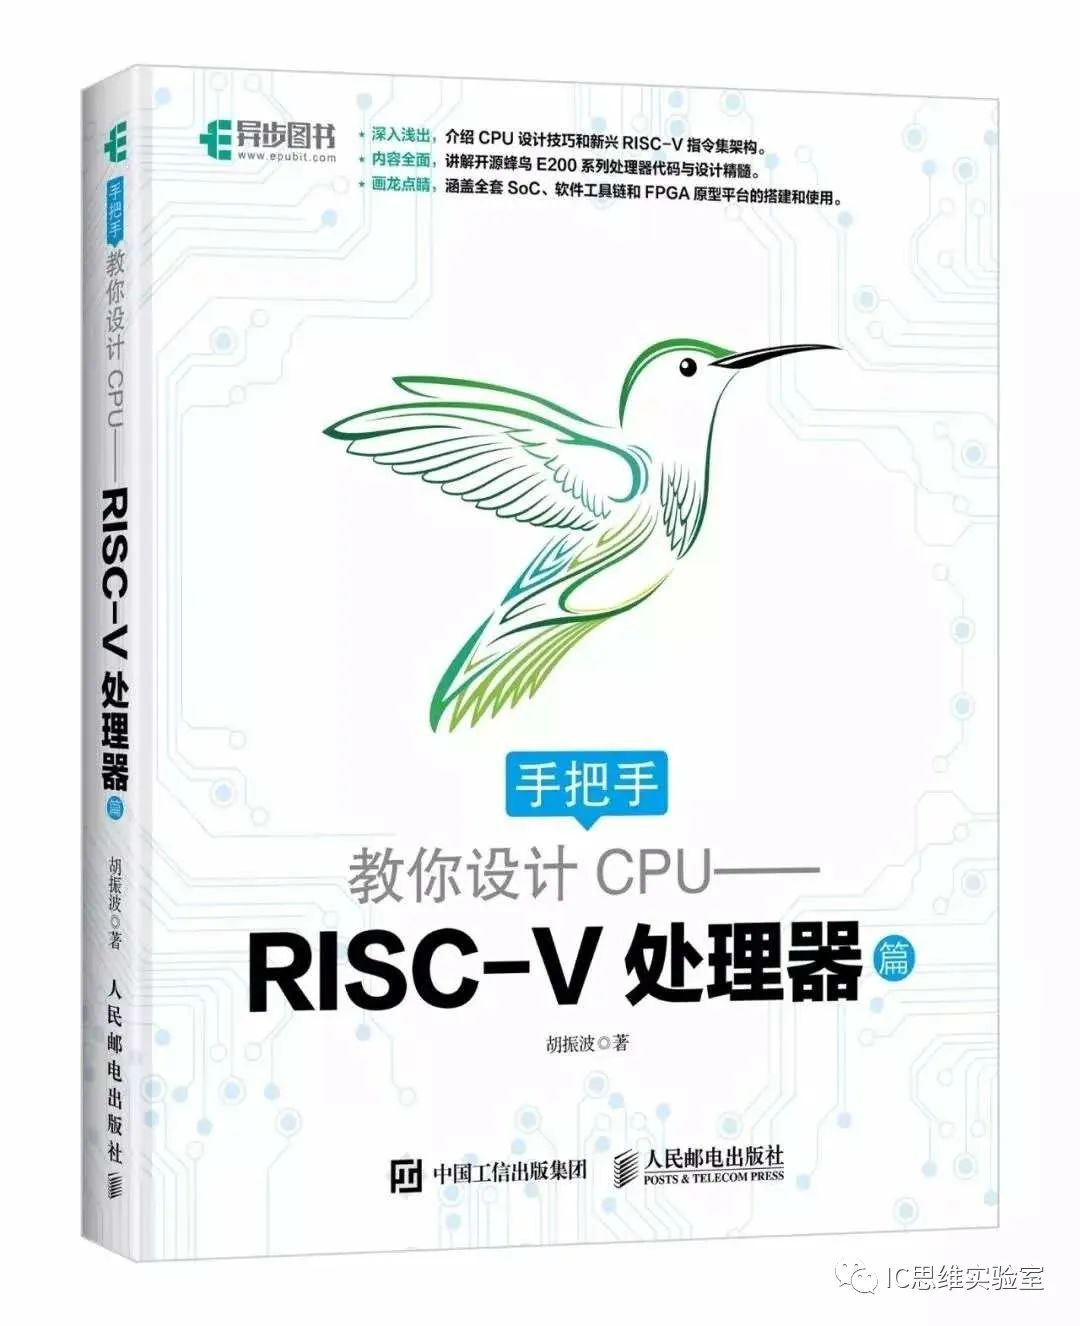 国内芯片技术交流-简评几款开源RISC-V处理器risc-v单片机中文社区(6)